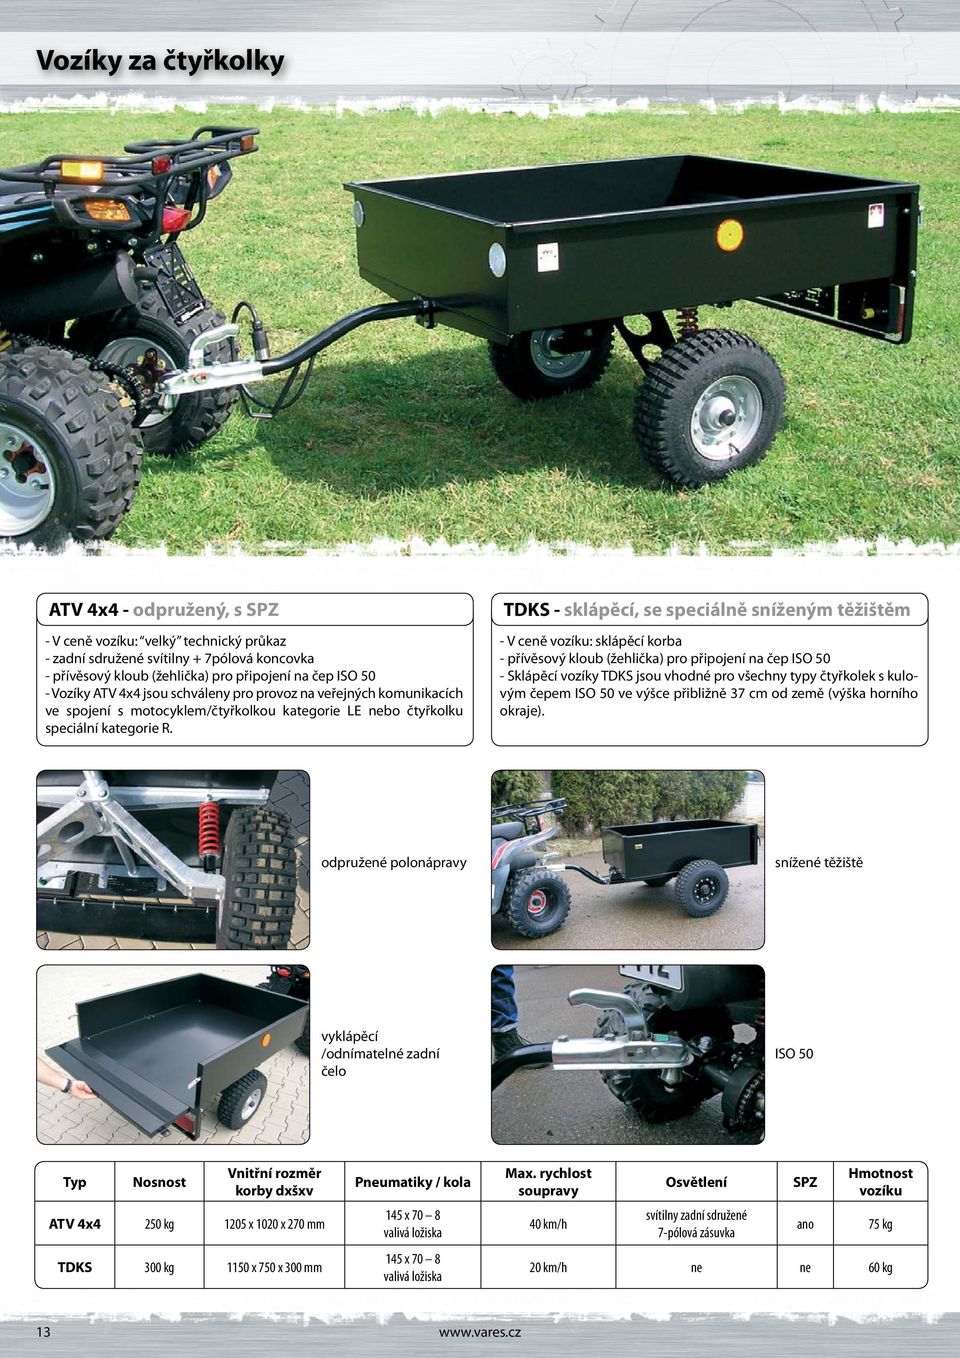 TDKS - sklápěcí, se speciálně sníženým těžištěm - V ceně vozíku: sklápěcí korba - přívěsový kloub (žehlička) pro připojení na čep ISO 50 - Sklápěcí vozíky TDKS jsou vhodné pro všechny typy čtyřkolek